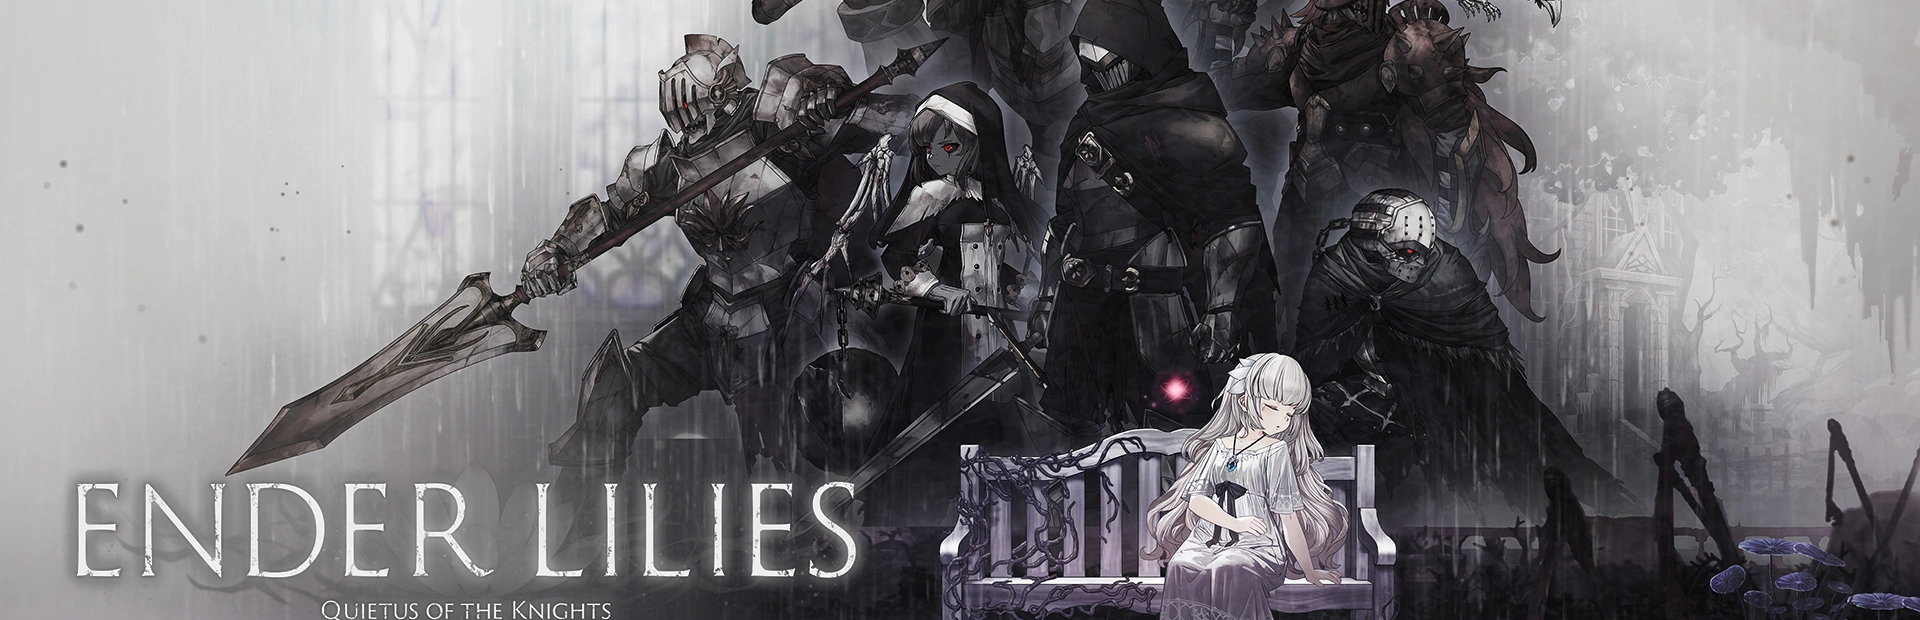 دانلود بازی Ender Lilies Quietus of the Knight  PC | گیمباتو